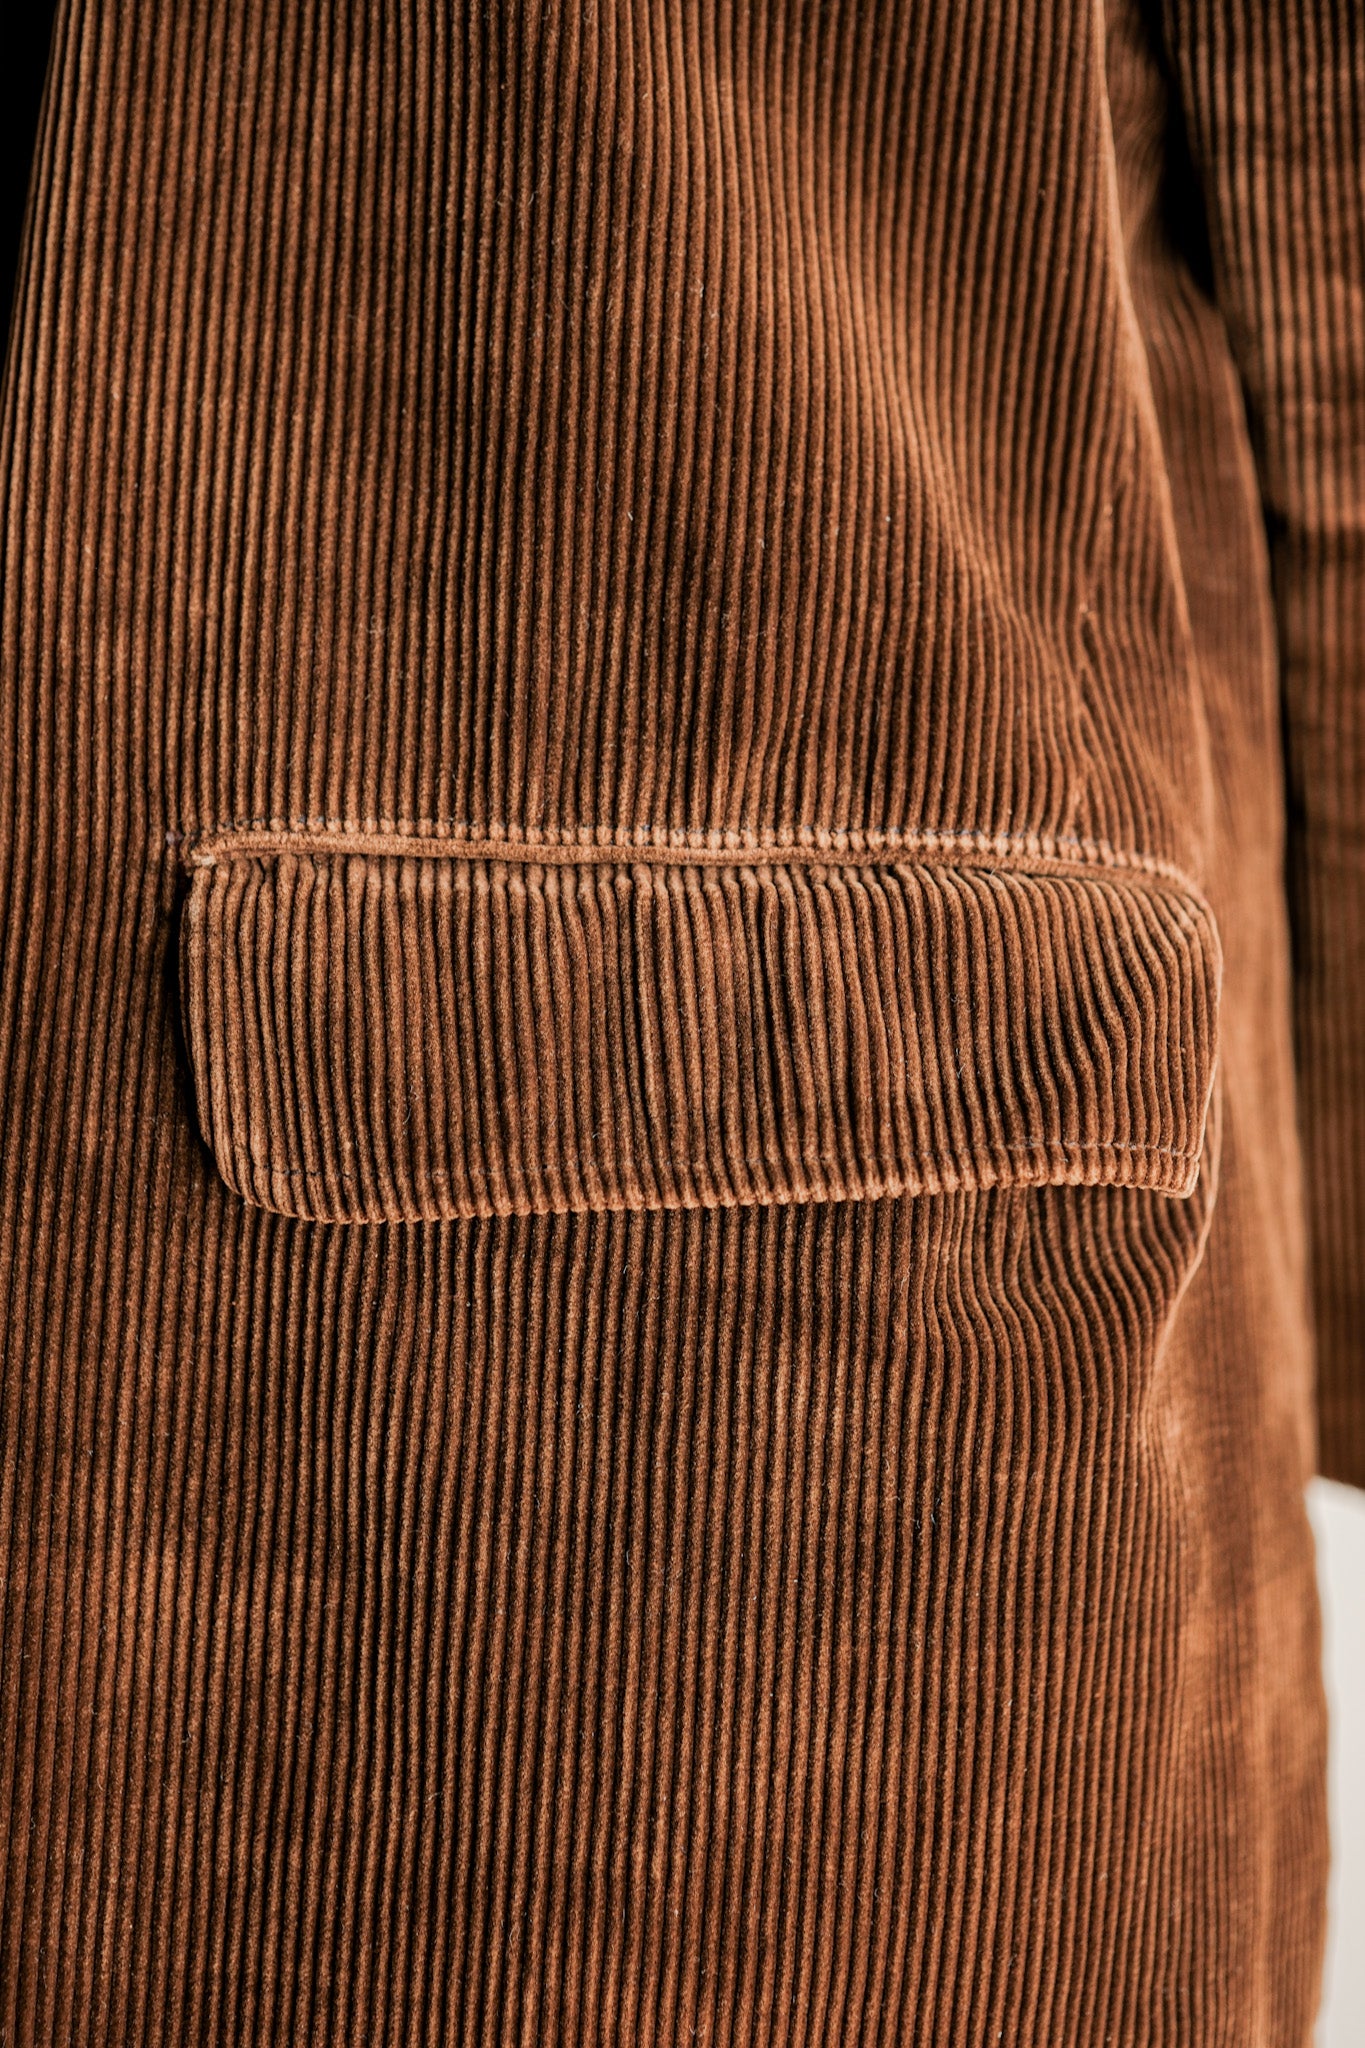 【~40's】French Vintage Brown Corduroy Lapel Work Jacket "Le Mont St. Michel"